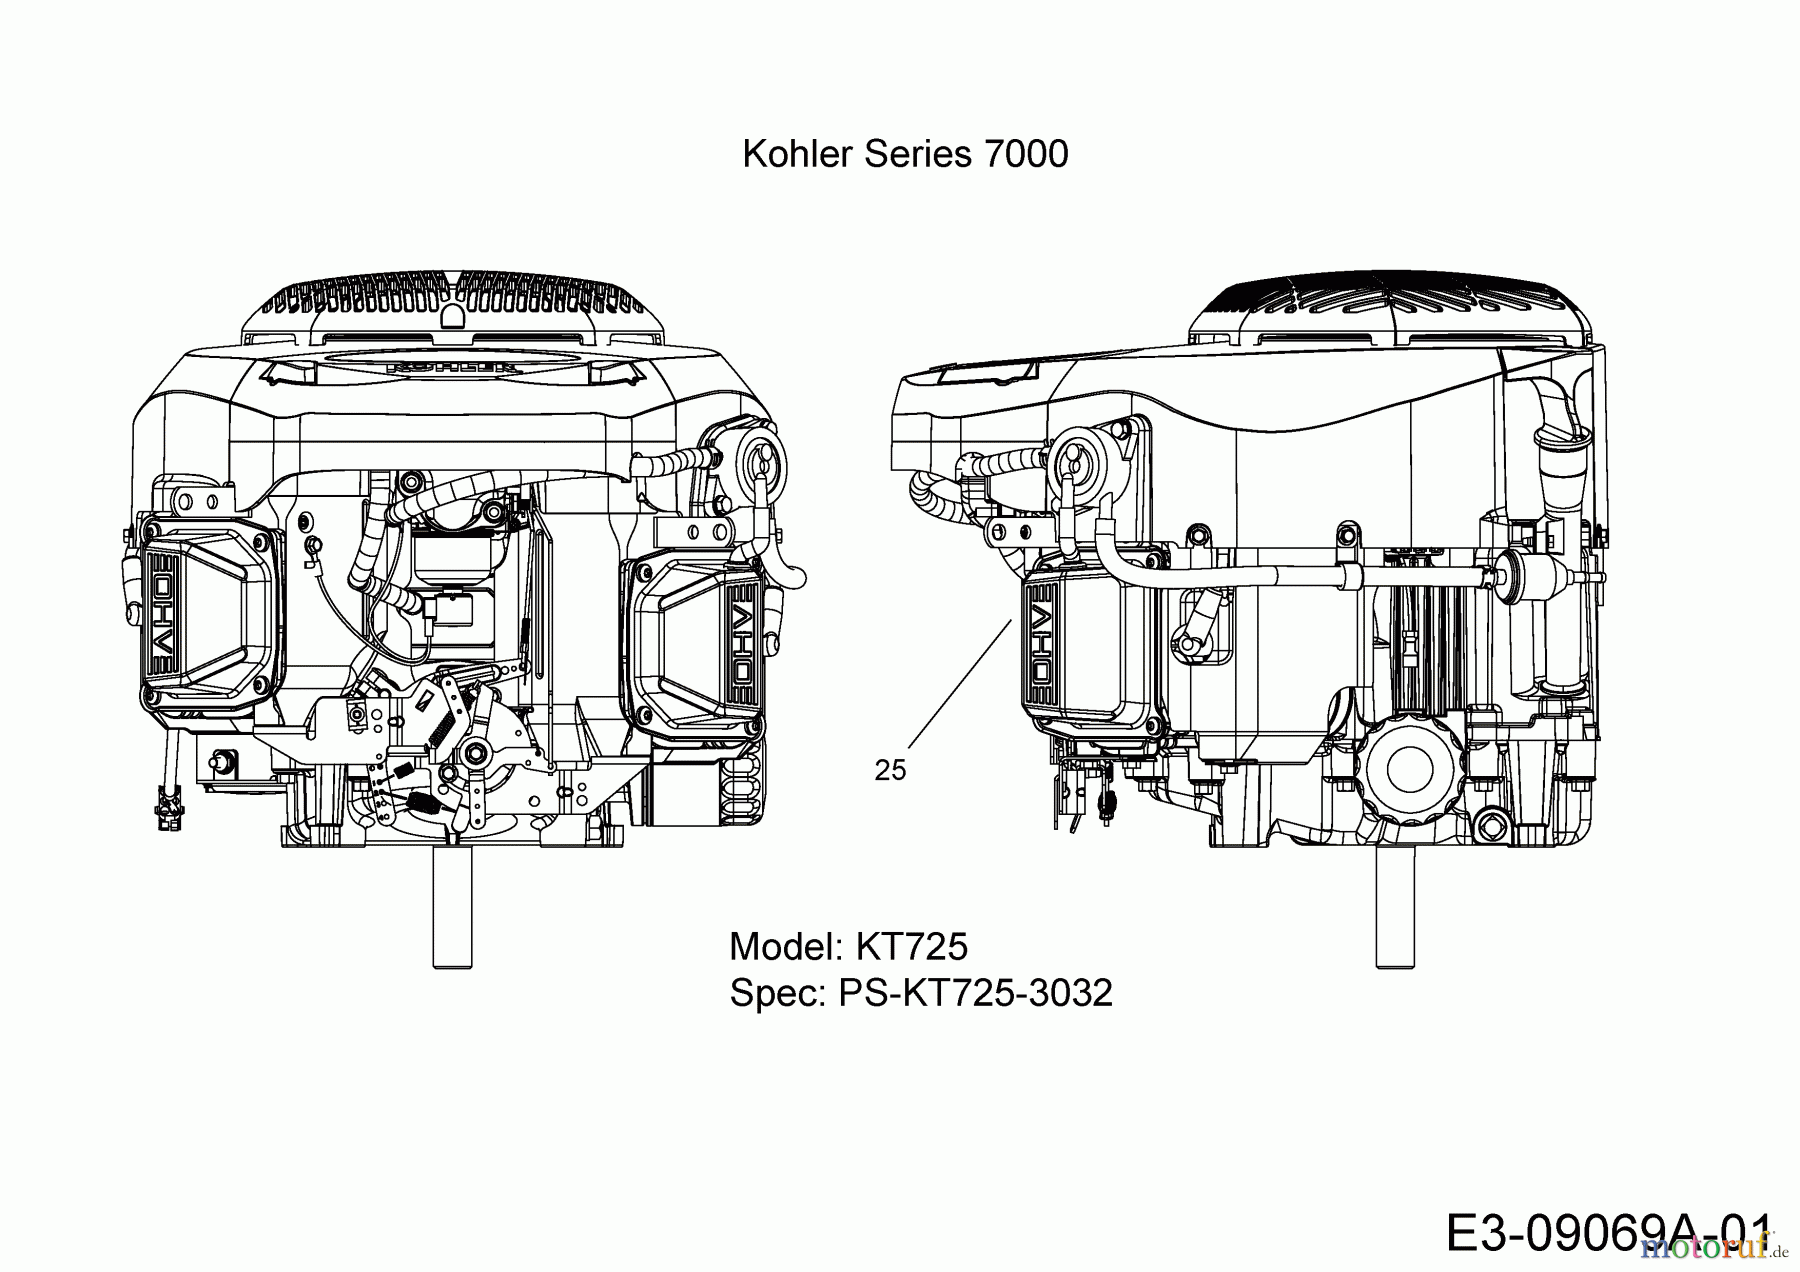  Massey Ferguson Rasentraktoren MF 41-22 RD 13HP91GN395  (2015) Motor Kohler